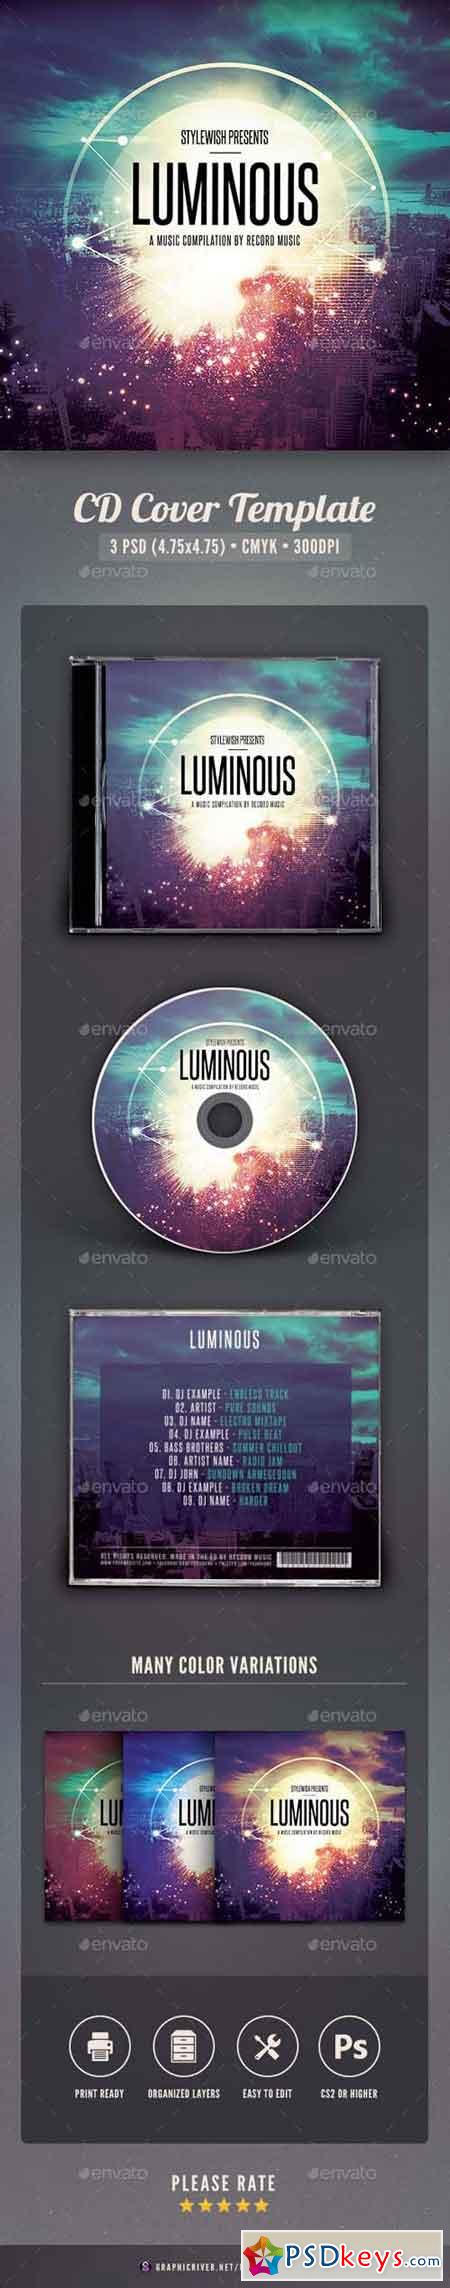 Luminous CD Cover Artwork 15935392